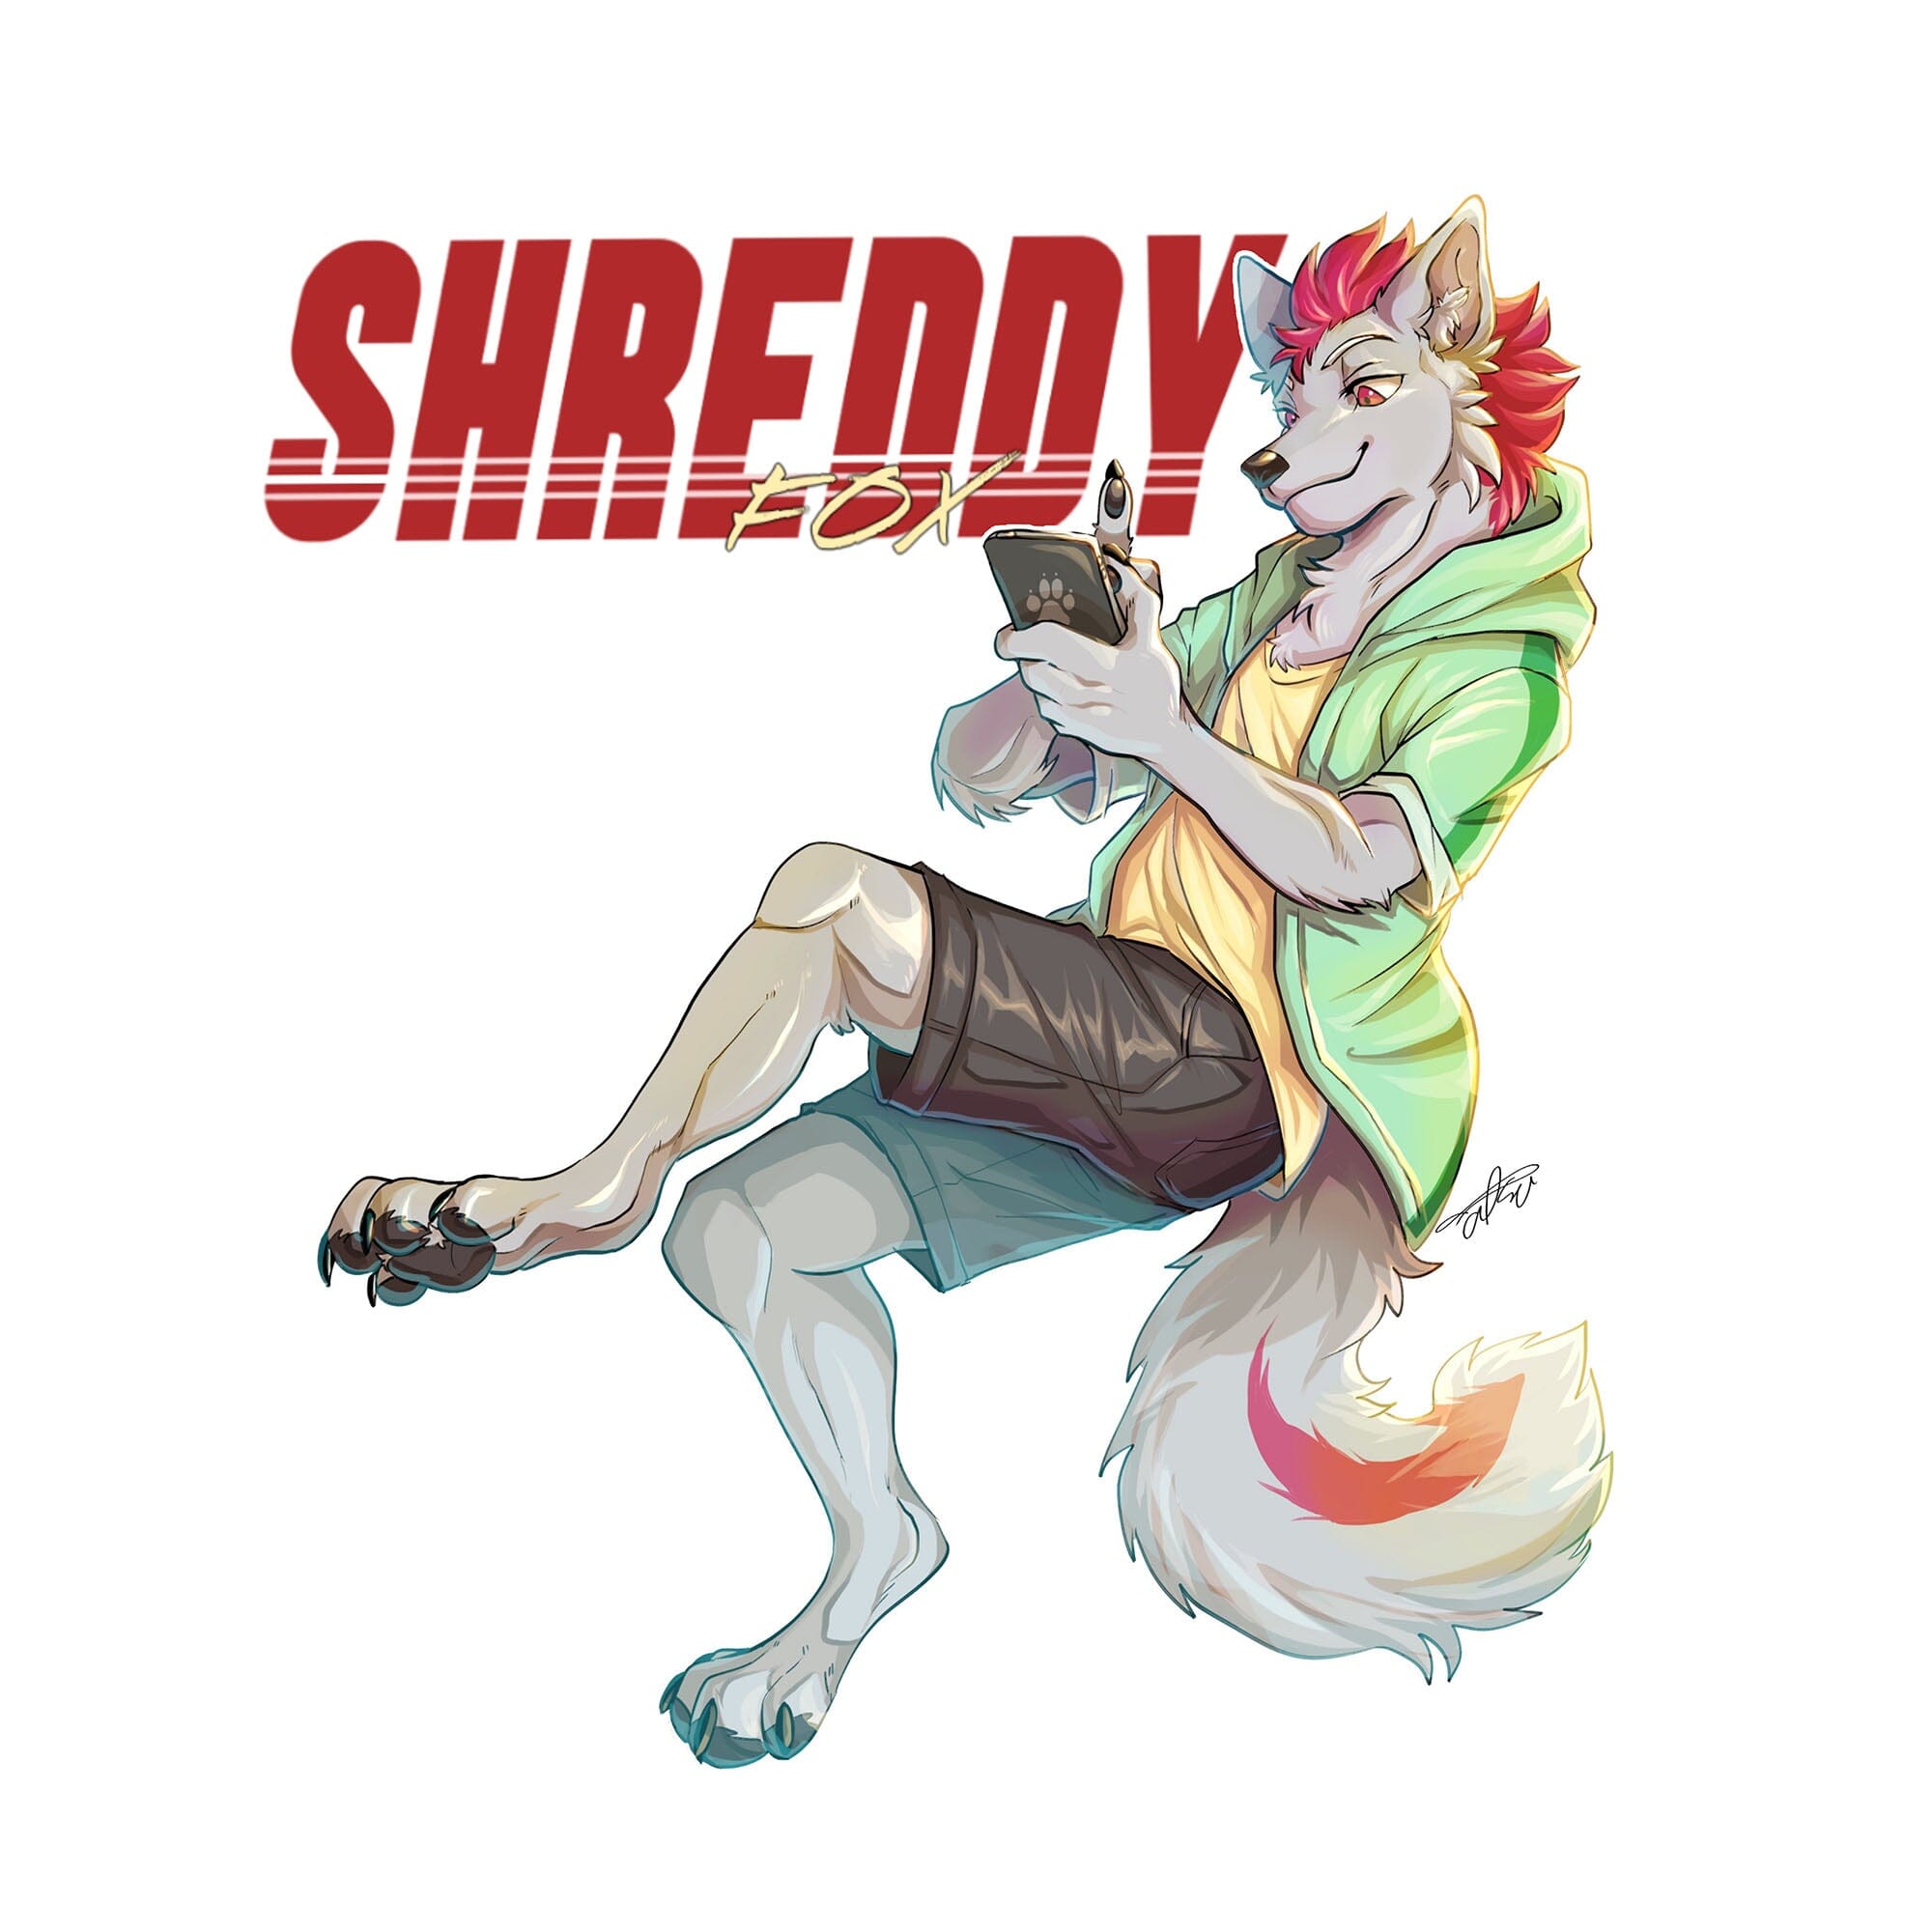 Shreddyfox - Scrolling